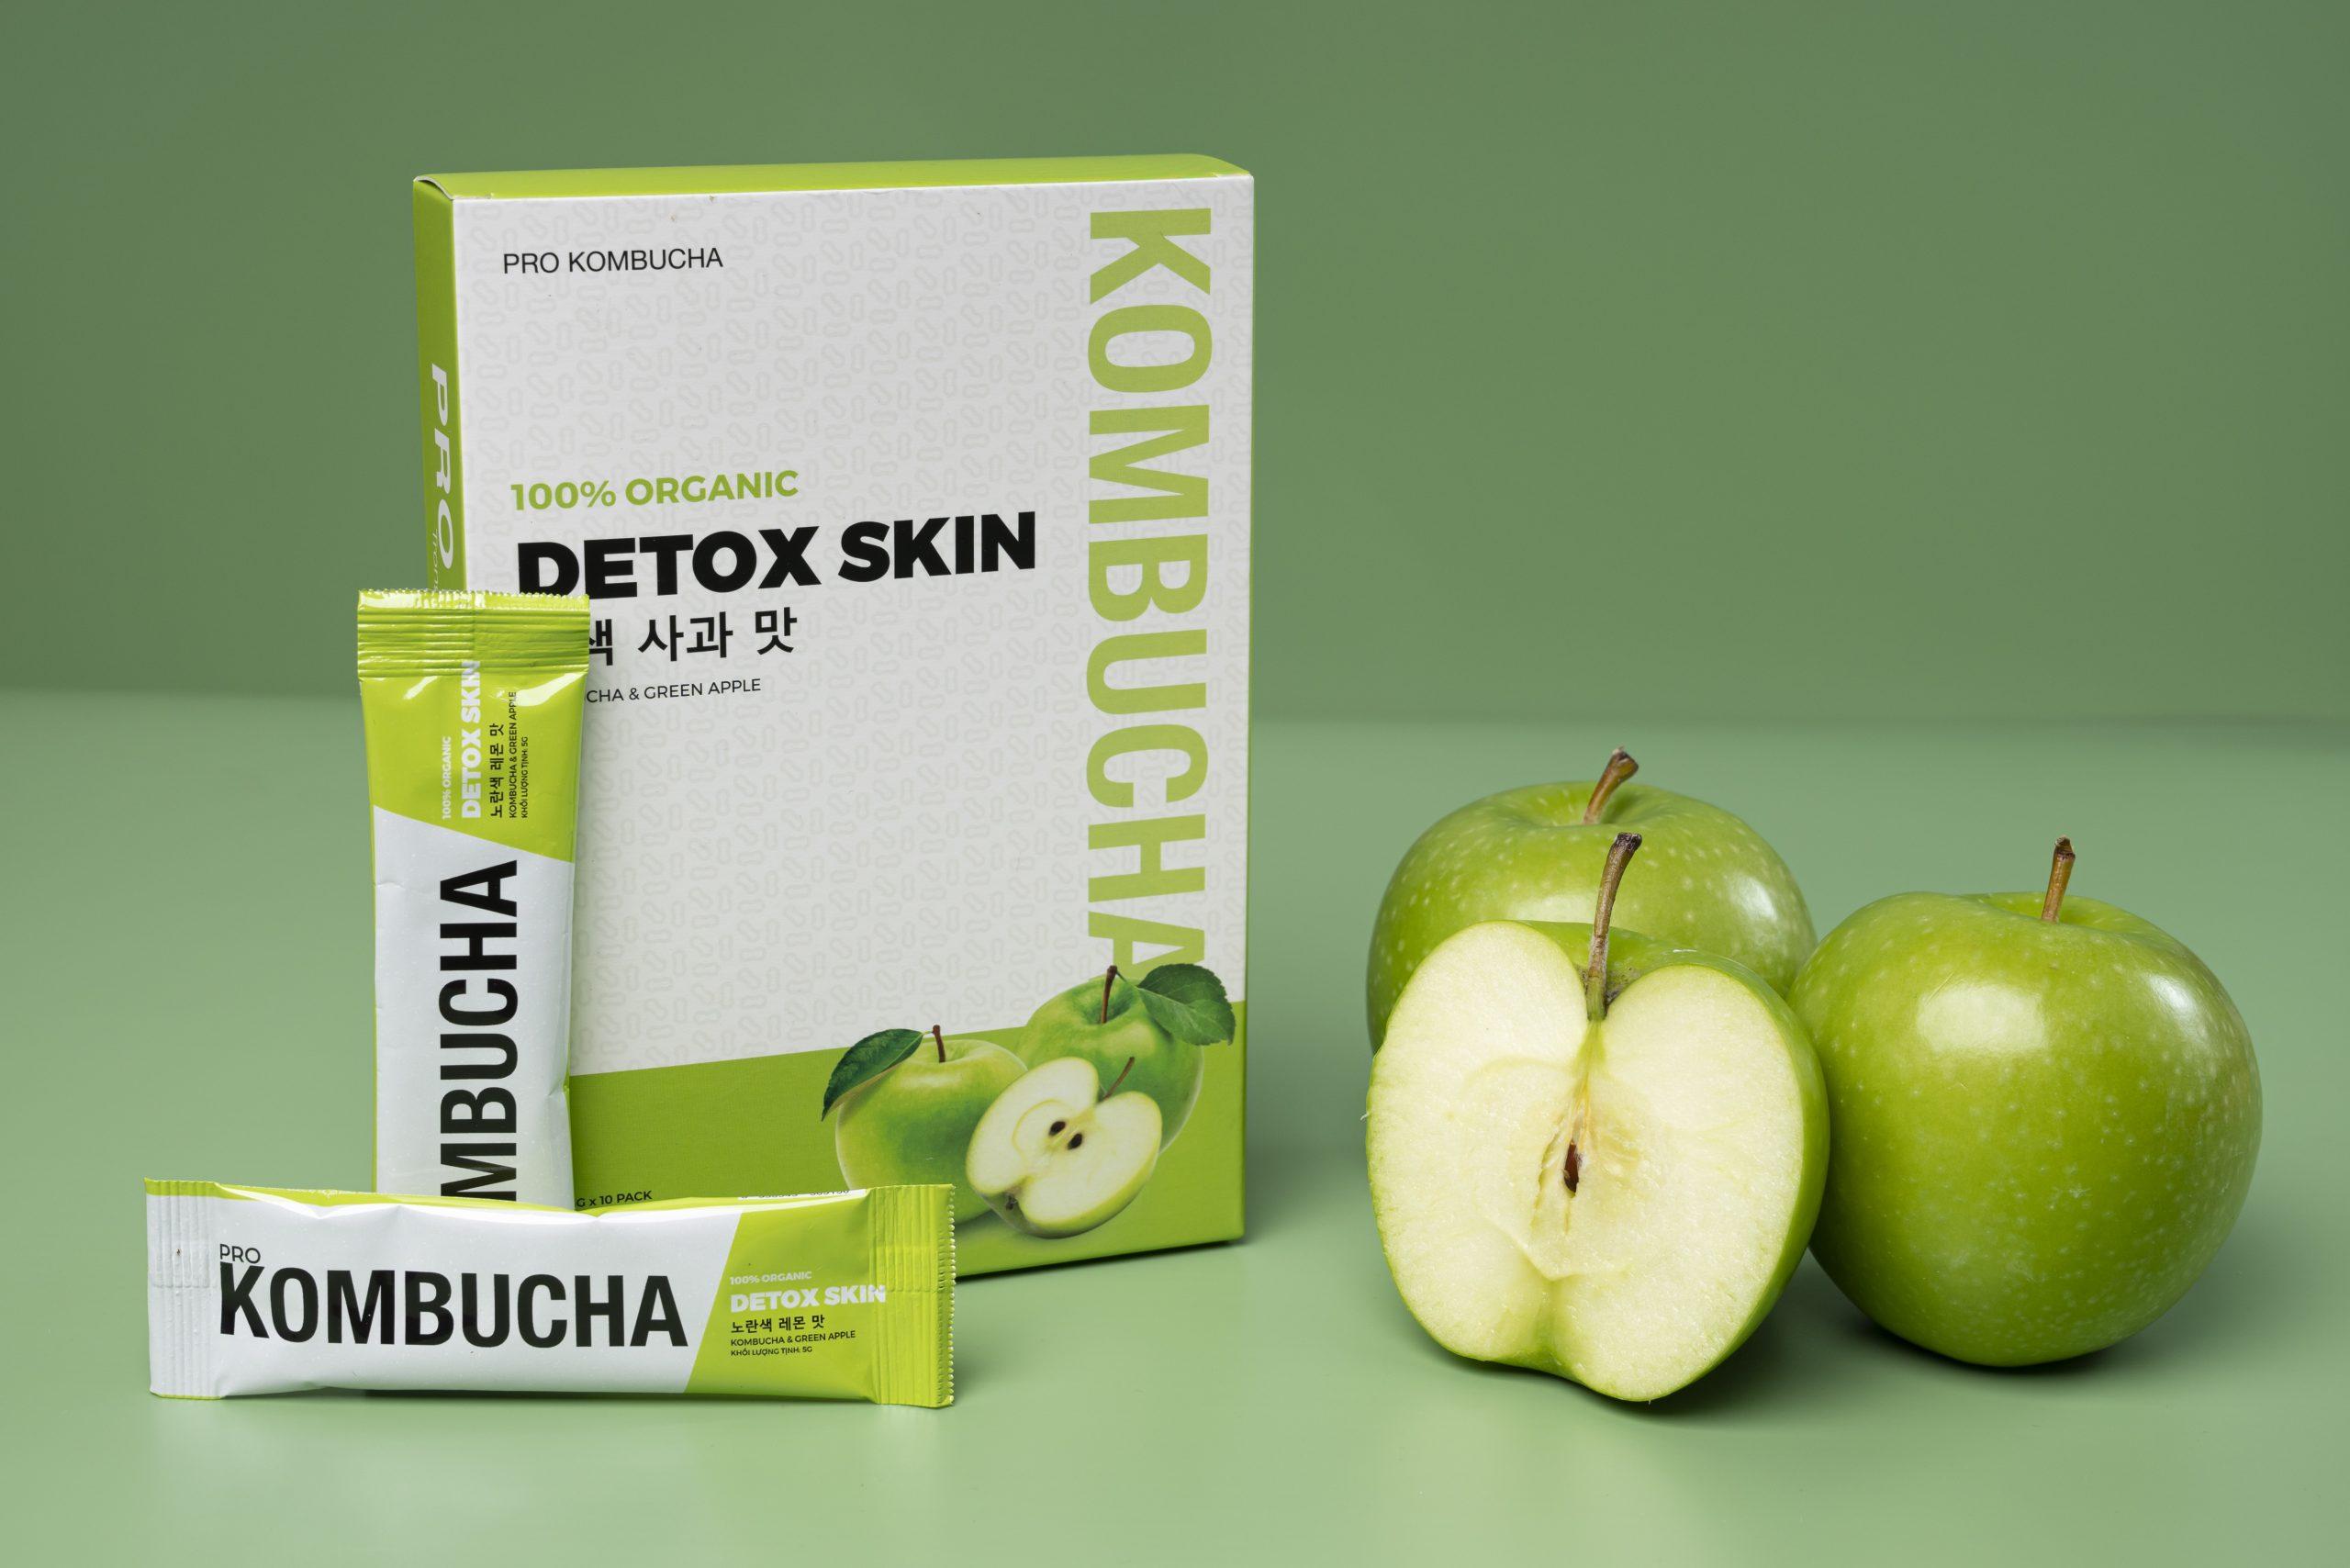 Pro Kombucha màu xanh lá cây có bổ sung thêm táo và mật ong (nguồn: internet)